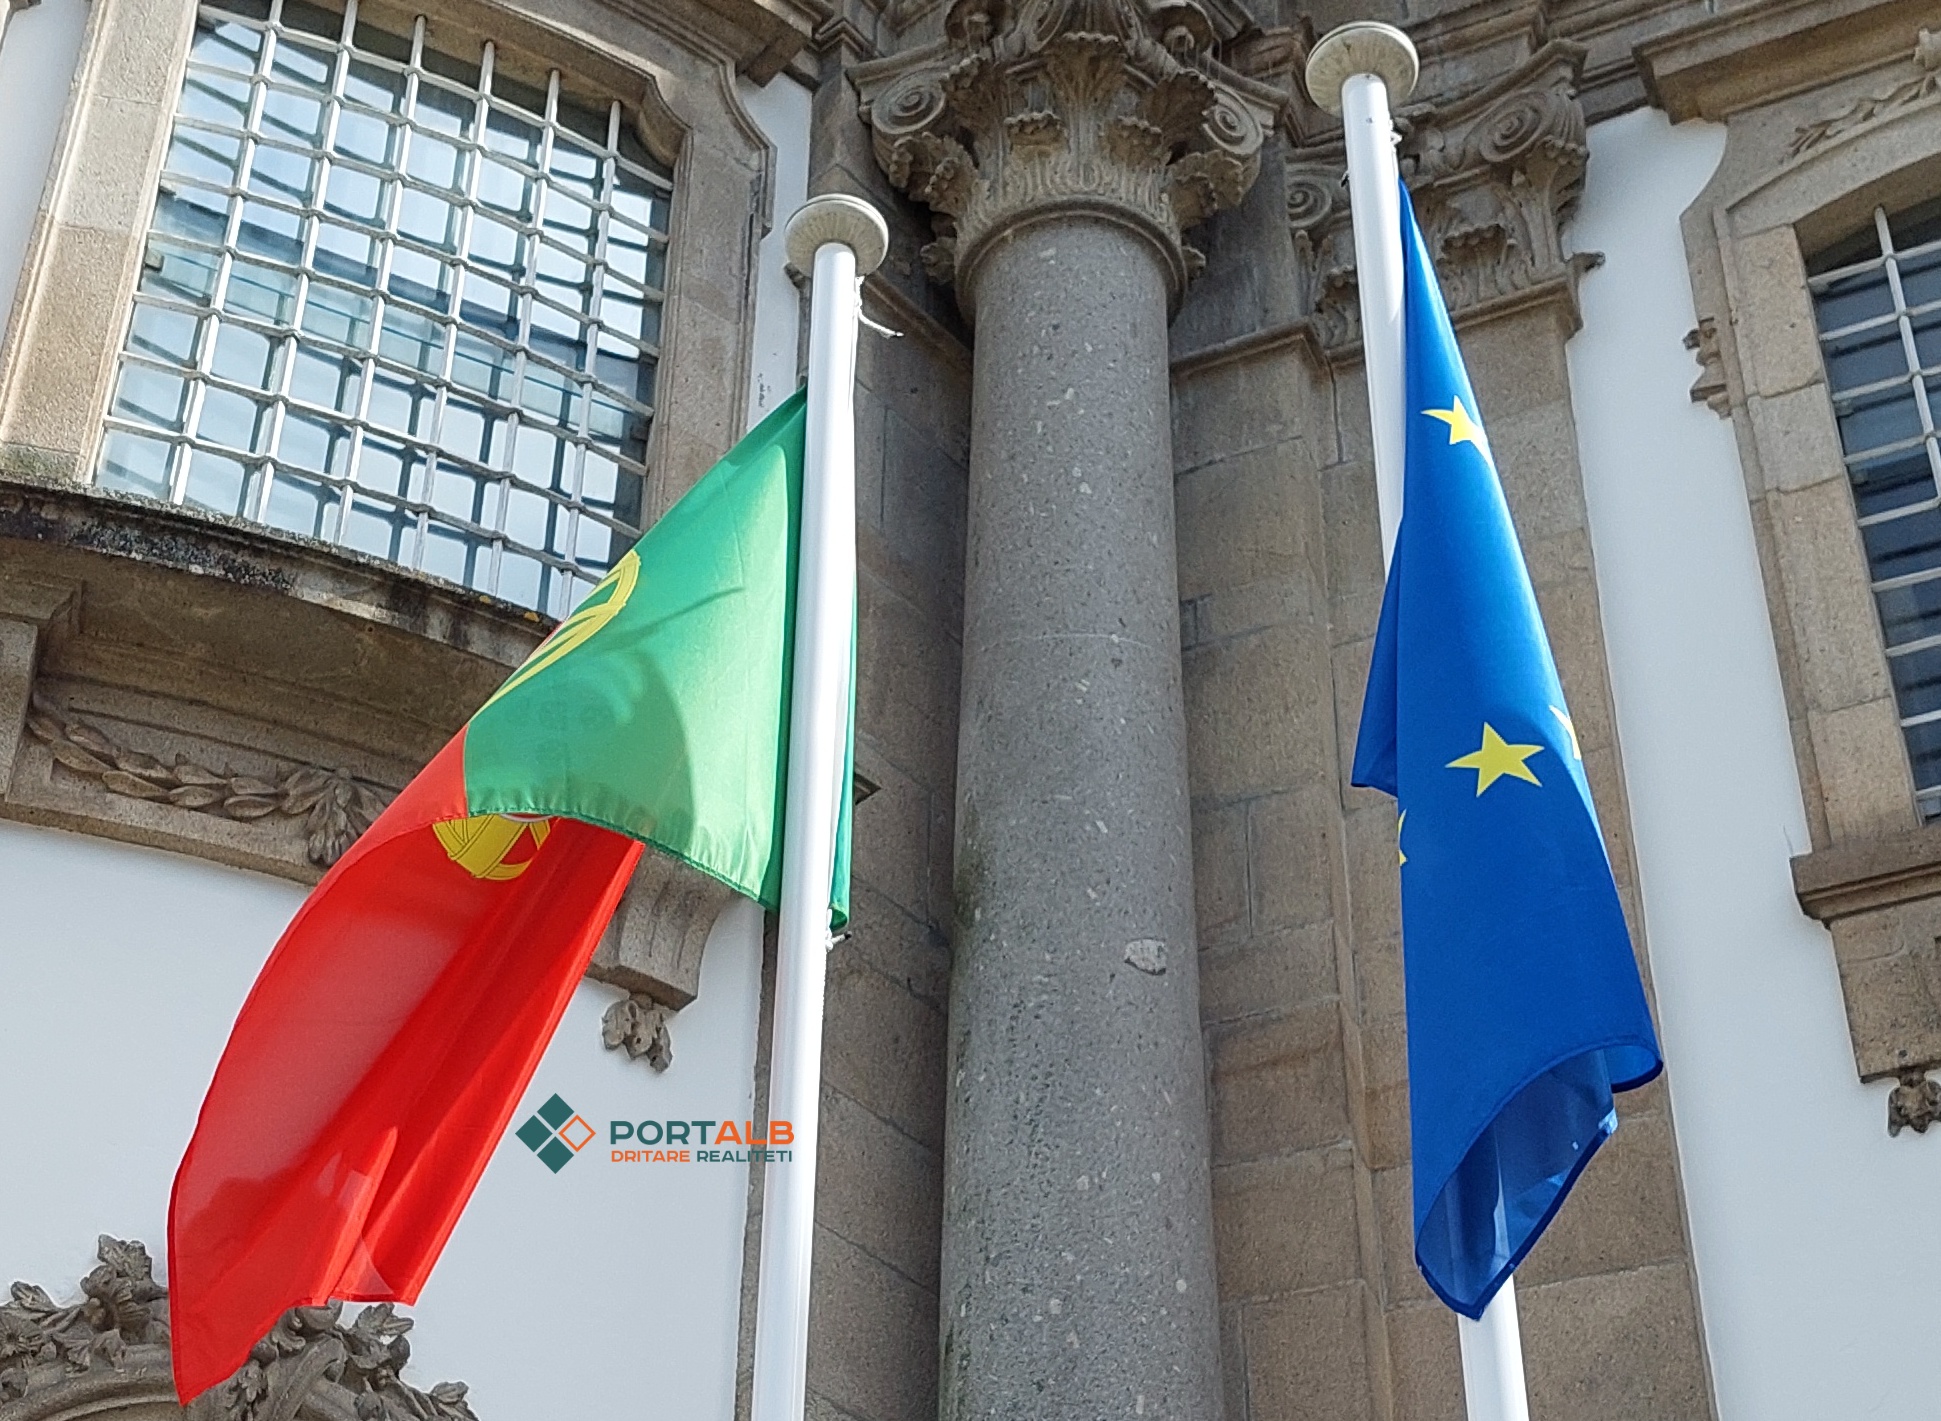 Flamuri i Portugalisë dhe ai evropian. Foto nga Faton Curri Portalb.mk